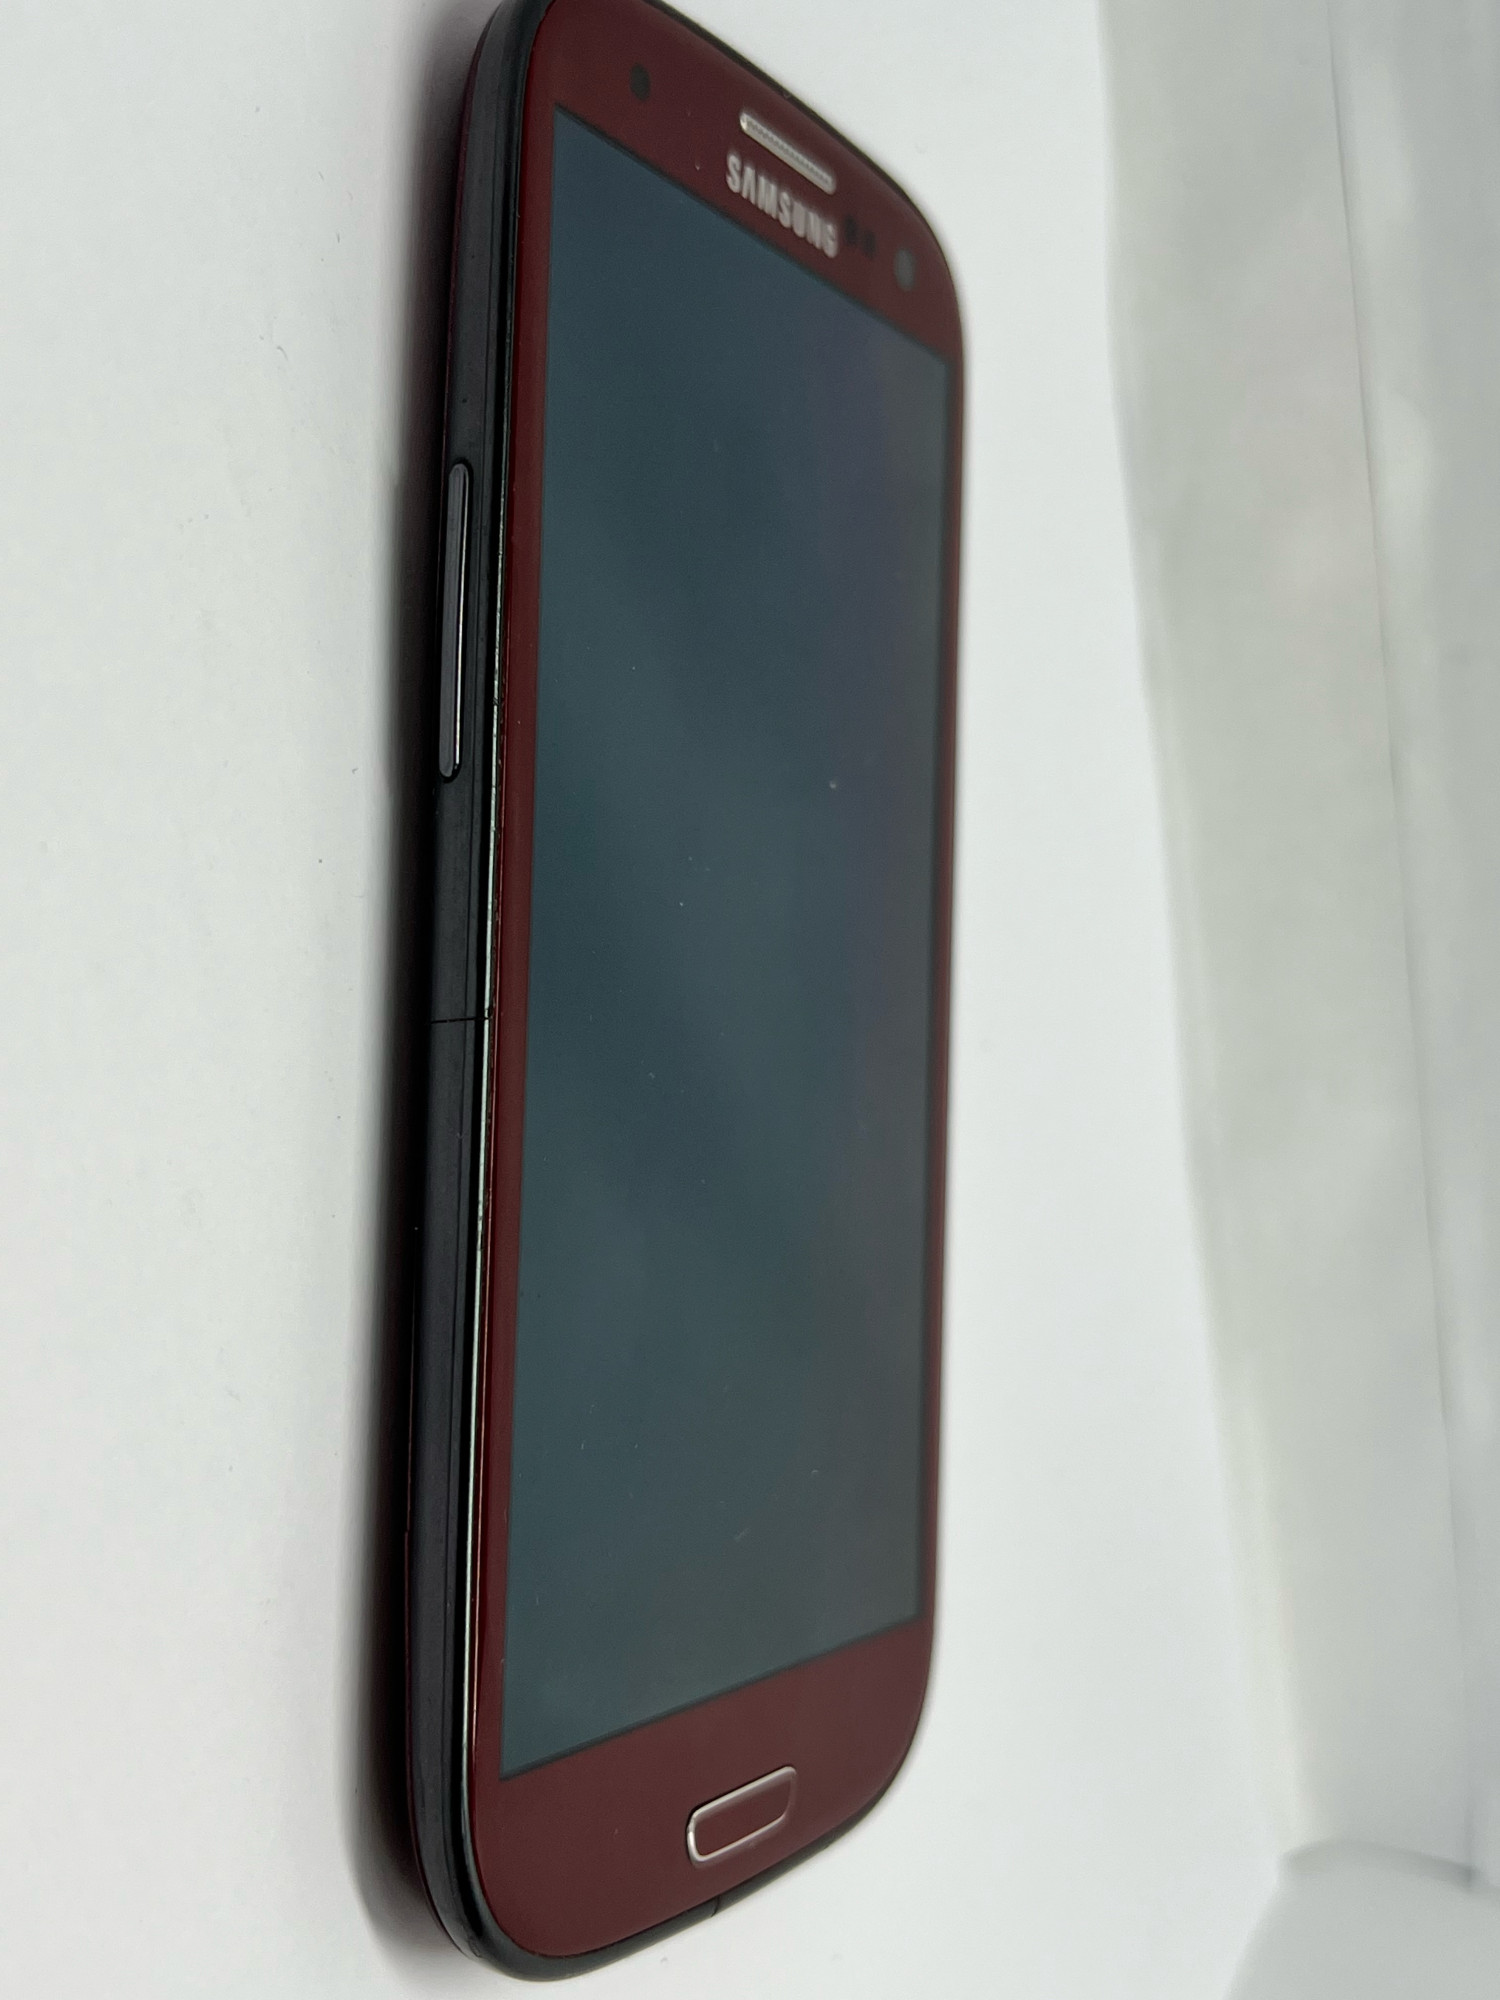 Samsung Galaxy S3 (GT-I9300) 1/16Gb 5